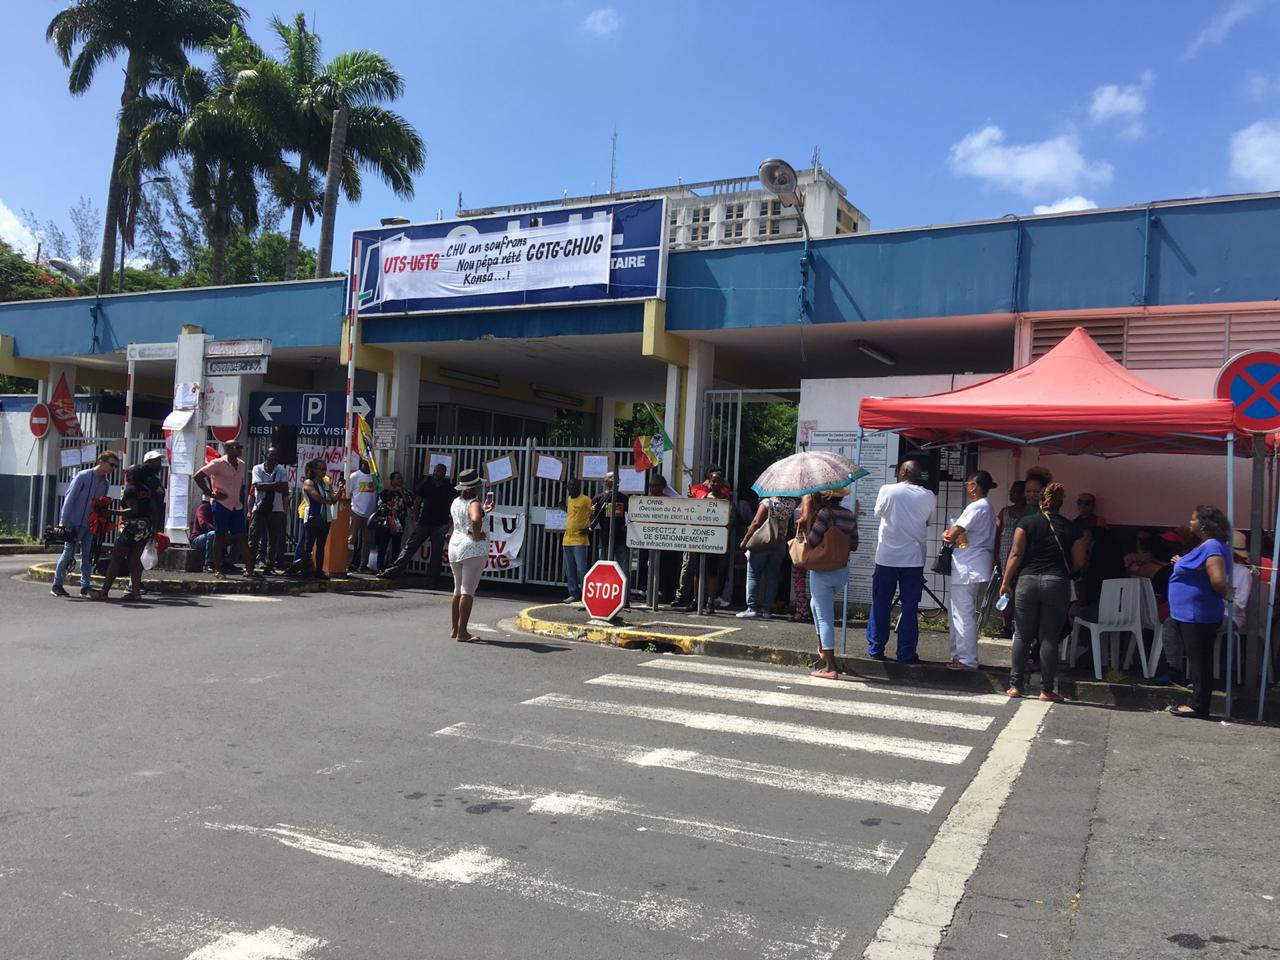     La CGTM Santé soutient la mobilisation des hospitaliers du CHU Pointe-à-Pitre-Abymes en Guadeloupe

